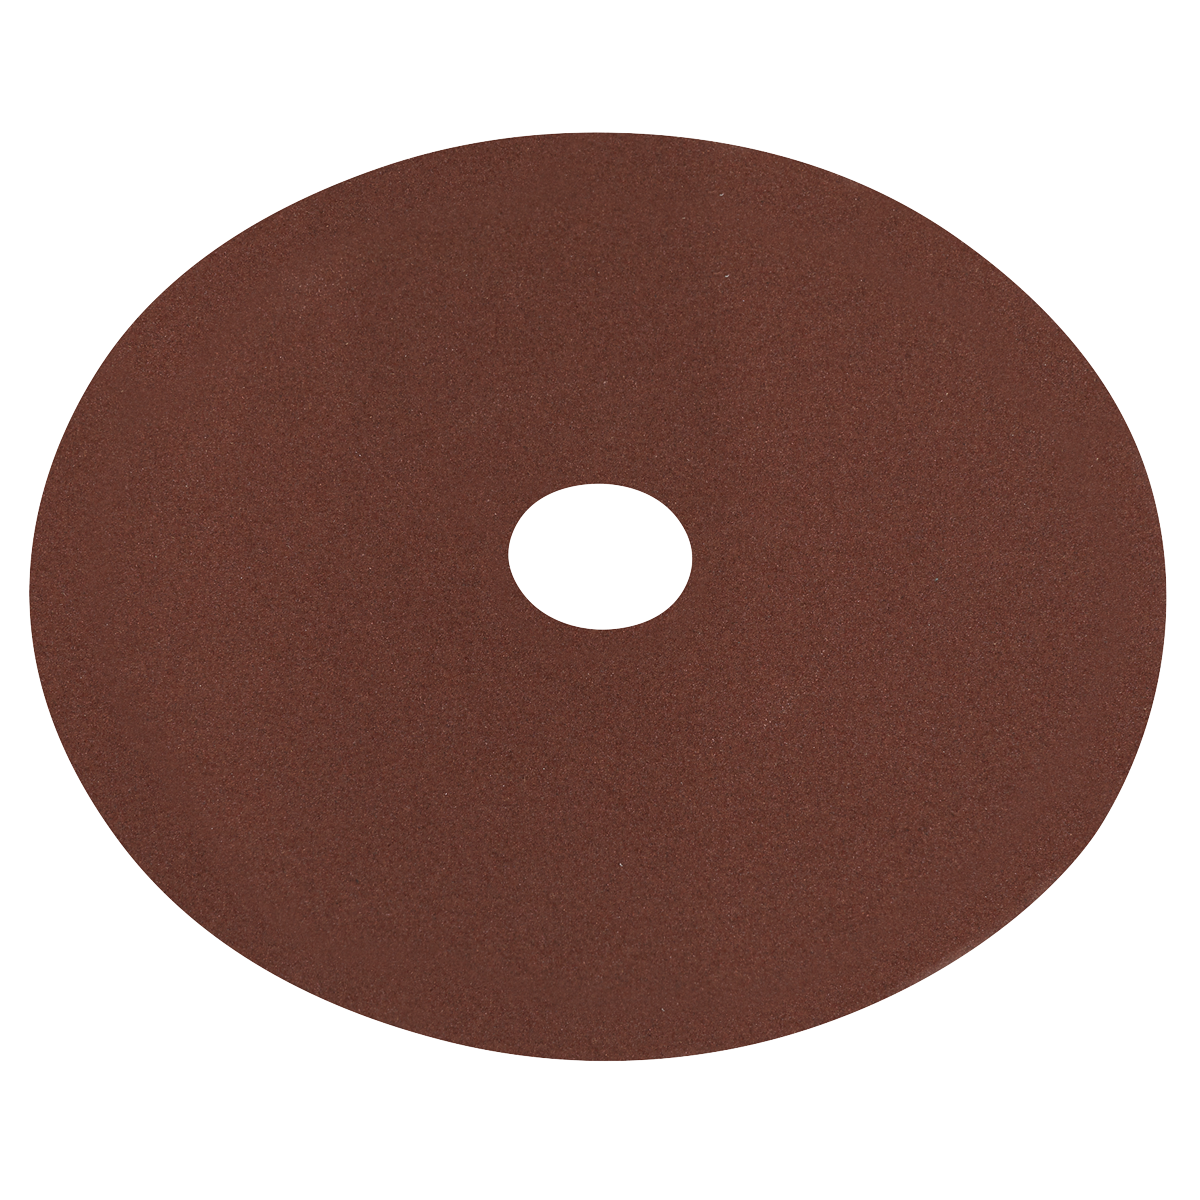 Fibre Backed Disc Ø100mm - 120Grit Pack of 25